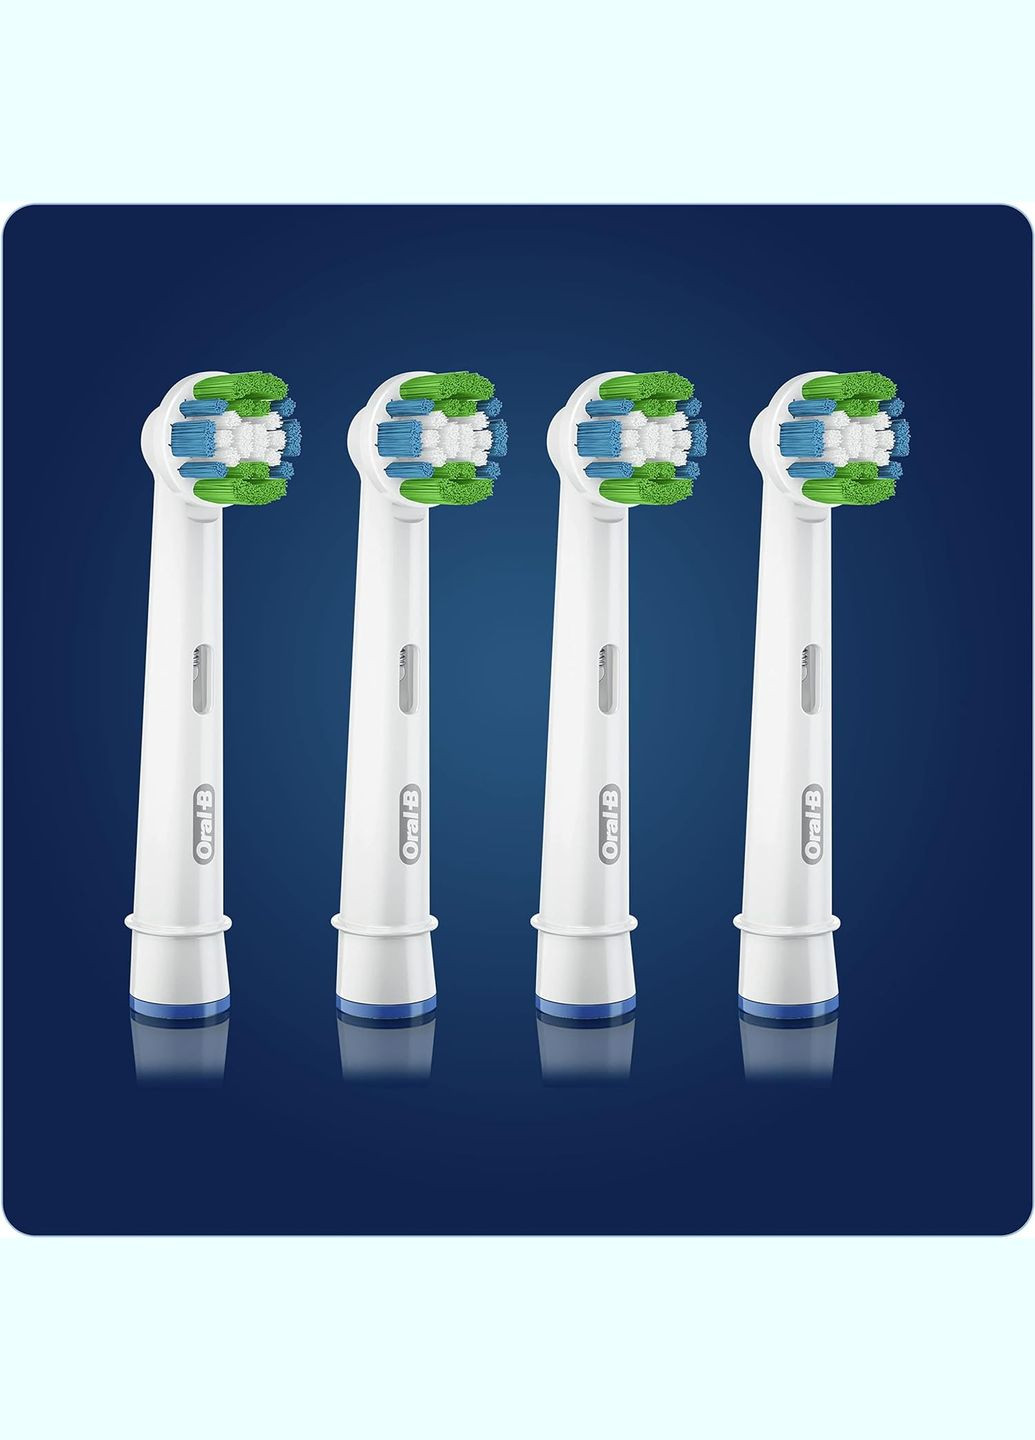 Насадки для електричних зубних щіток OralB Precision Clean Cleanmaximiser (10 шт) Oral-B (280265729)